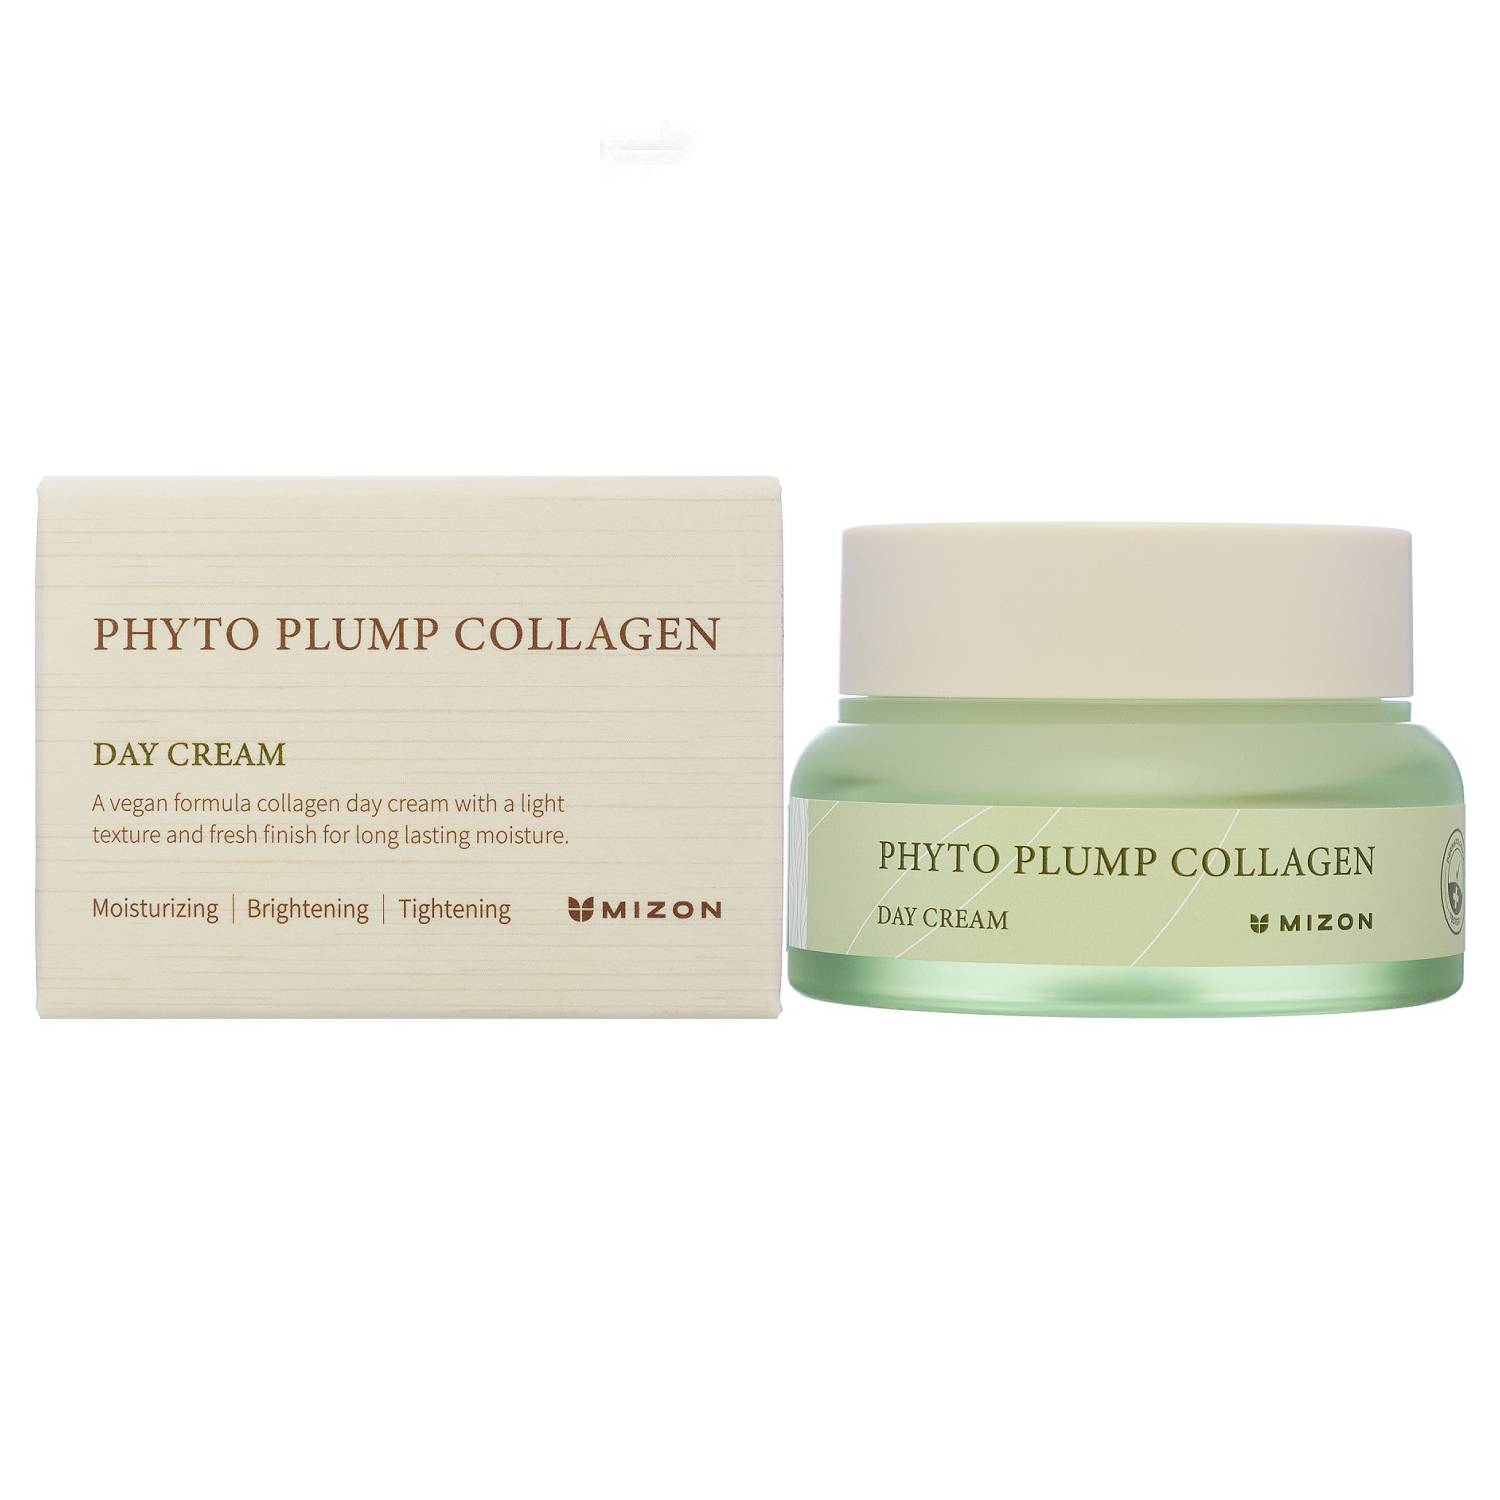 Mizon Дневной крем с фитоколлагеном для лица Day Cream, 50 мл (Mizon, Phyto Plump Collagen) ночные процедуры phyto plump collagen night cream mizon